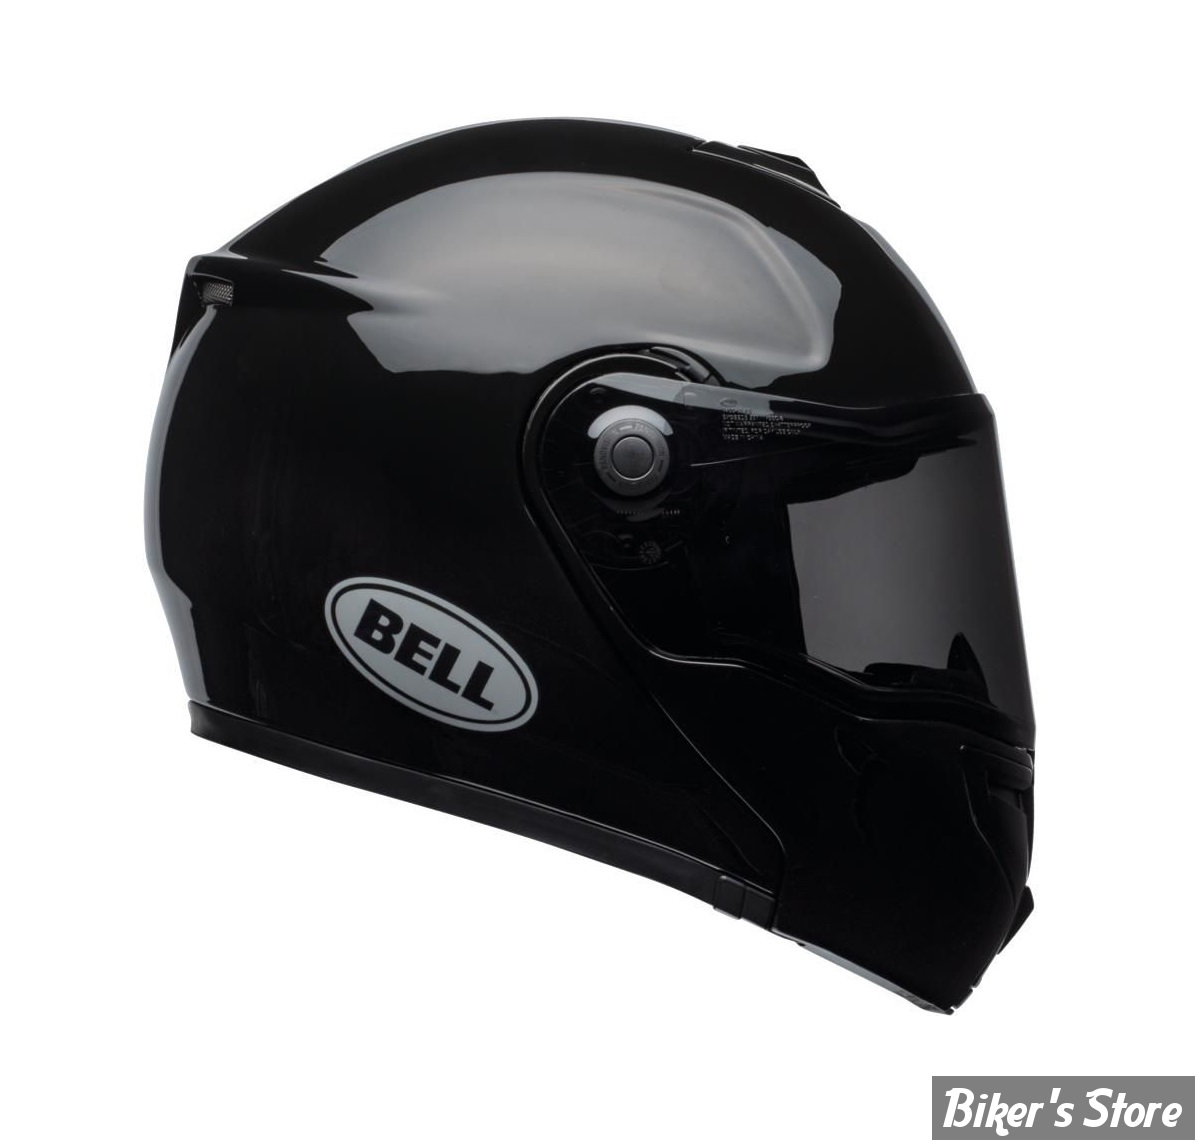 - CASQUE BELL - SRT Modular Helmet - CONVERTIBLE - COULEUR : NOIR BRILLANT - TAILLE : L